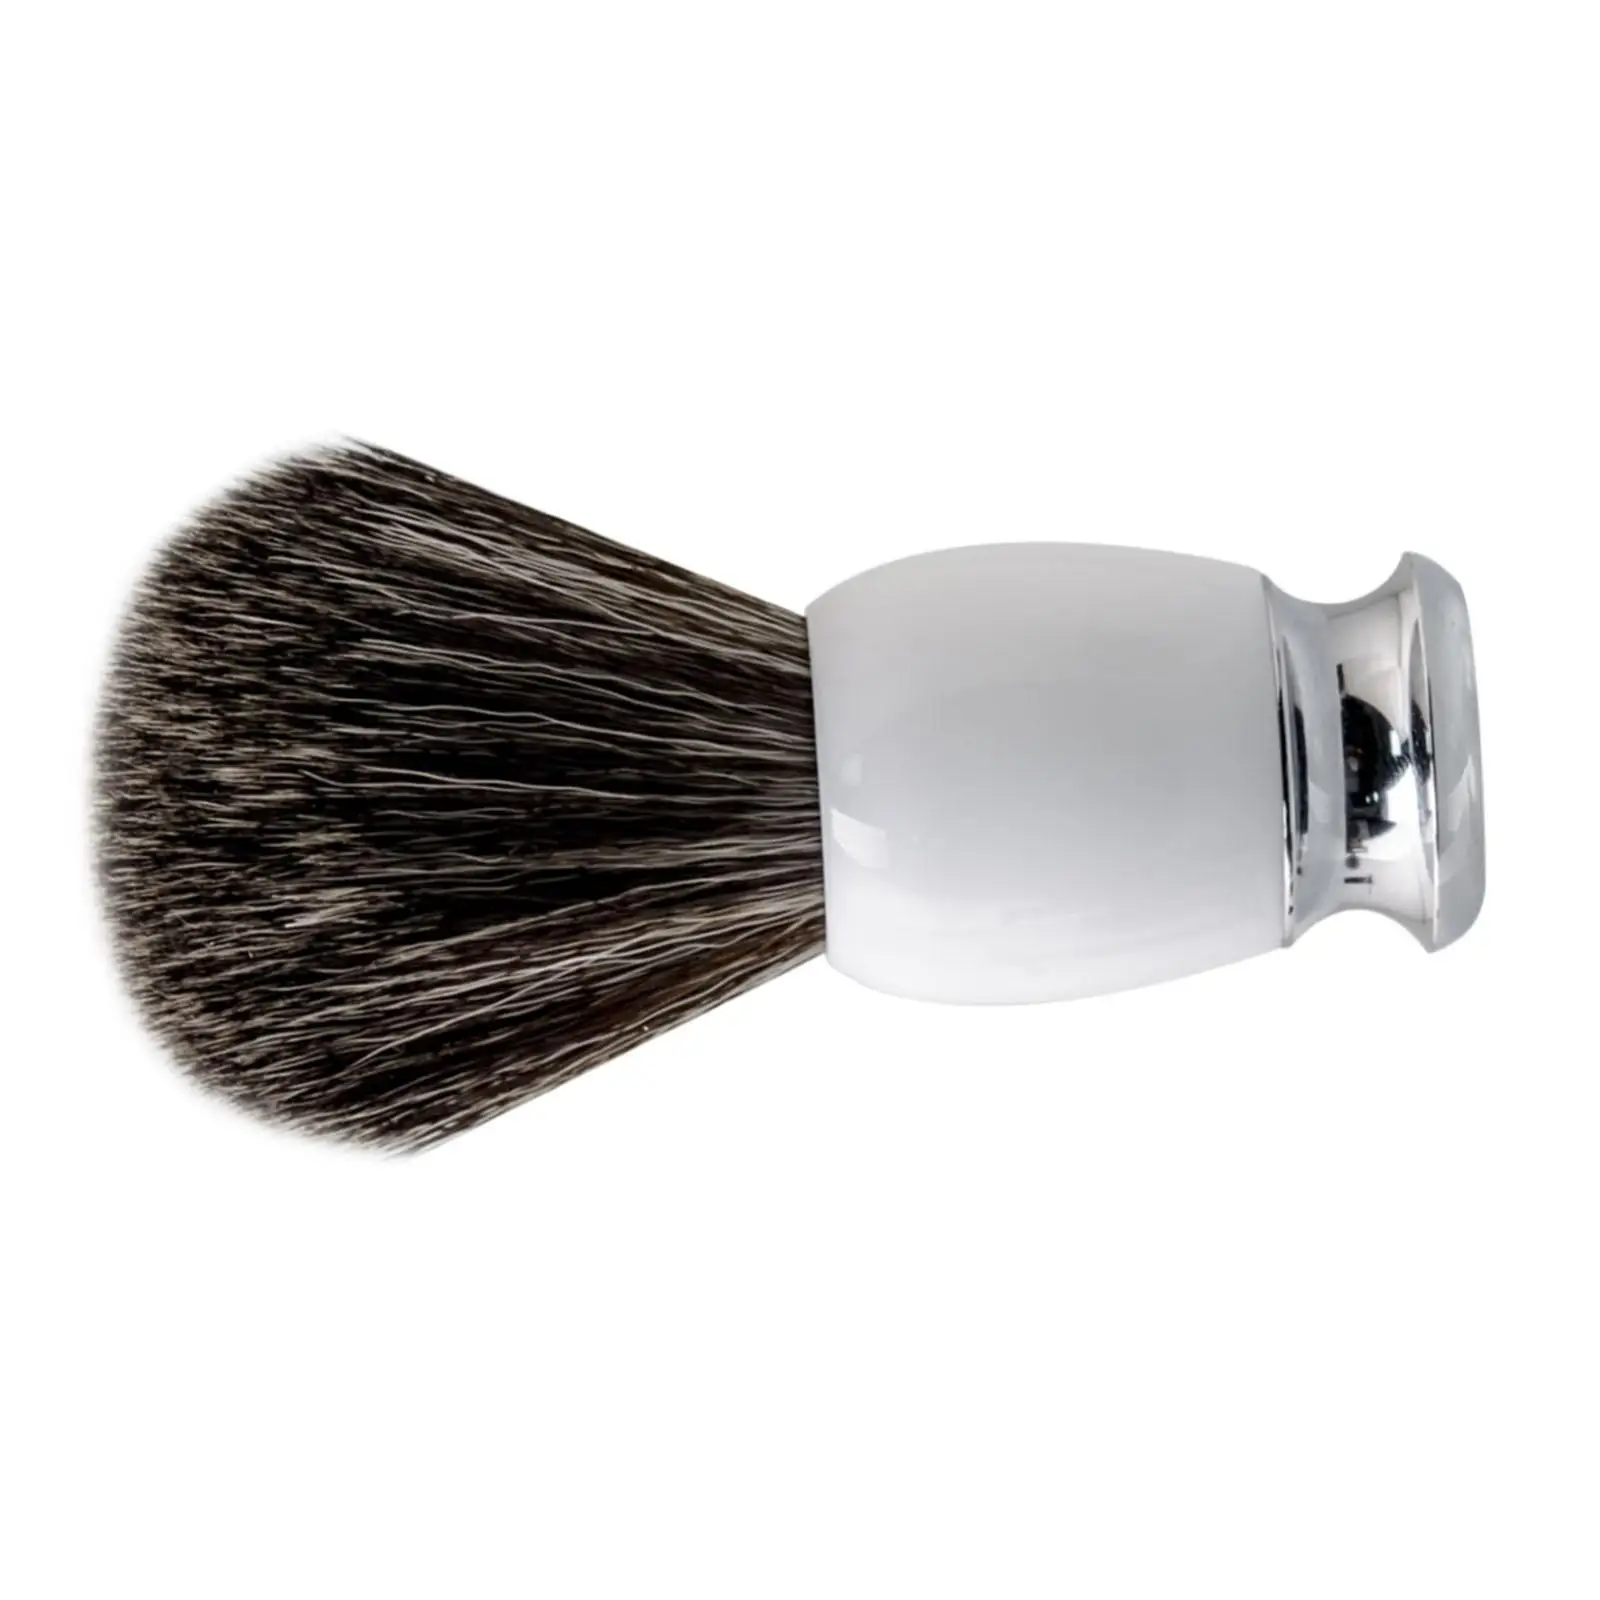 Shaving Brush Beard Brush Hand Crafted Premium Ergonomic Face Cleaning